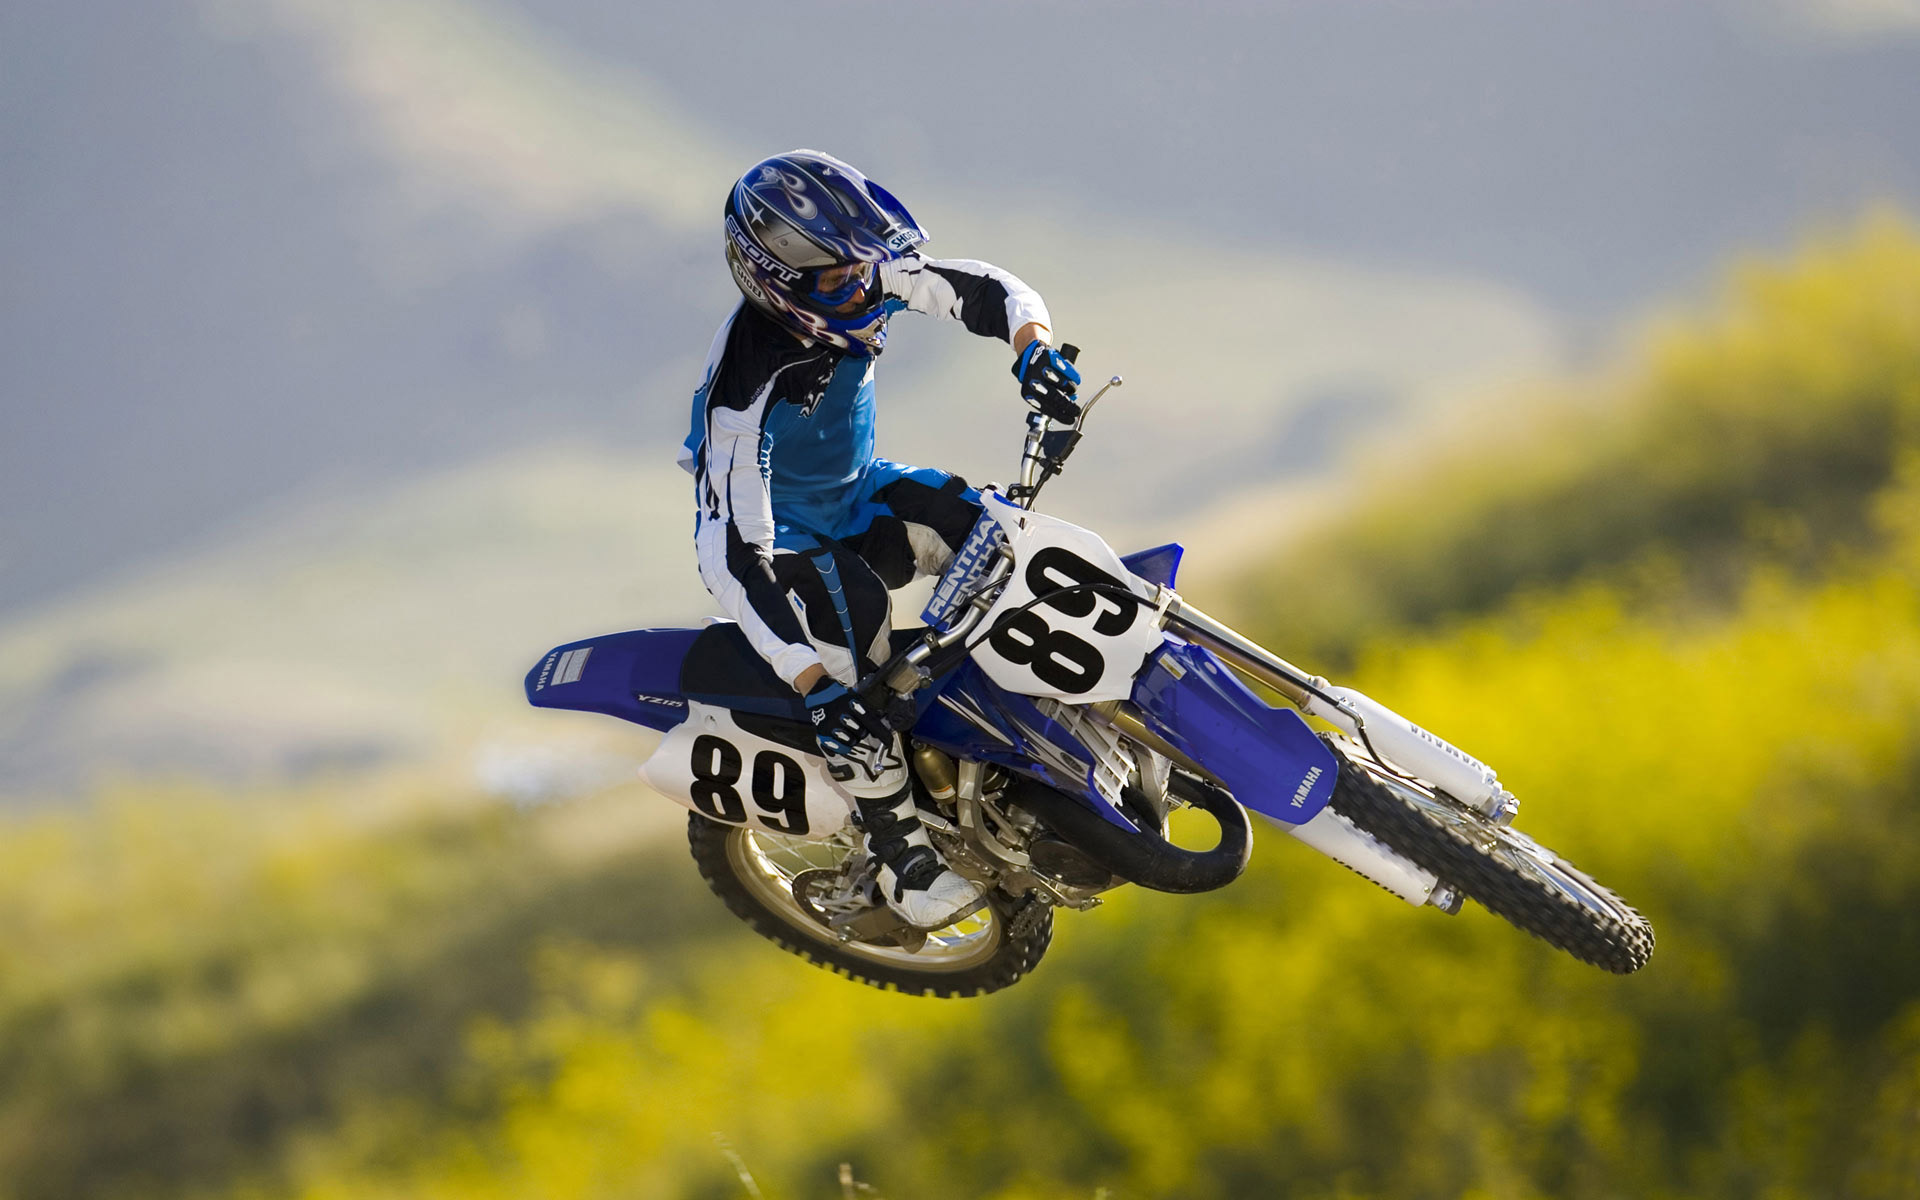 Dirt Bike, Off-road adventures, Exciting jumps, Motorcross action, 1920x1200 HD Desktop